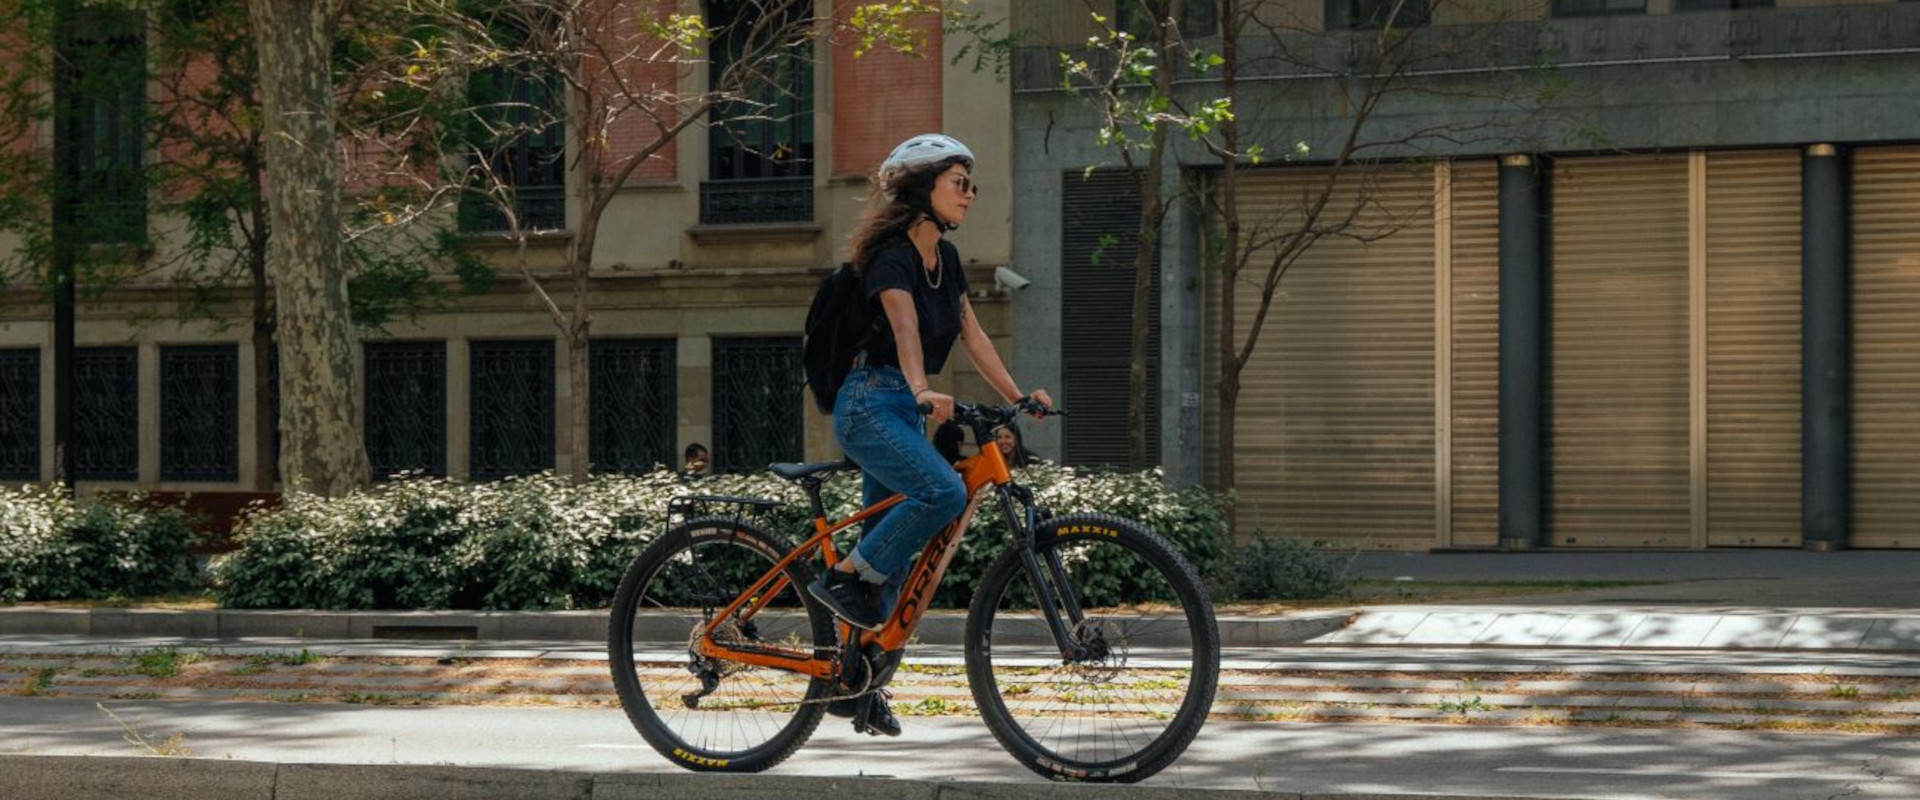 Verandert een e-bike de manier waarop je fietst?